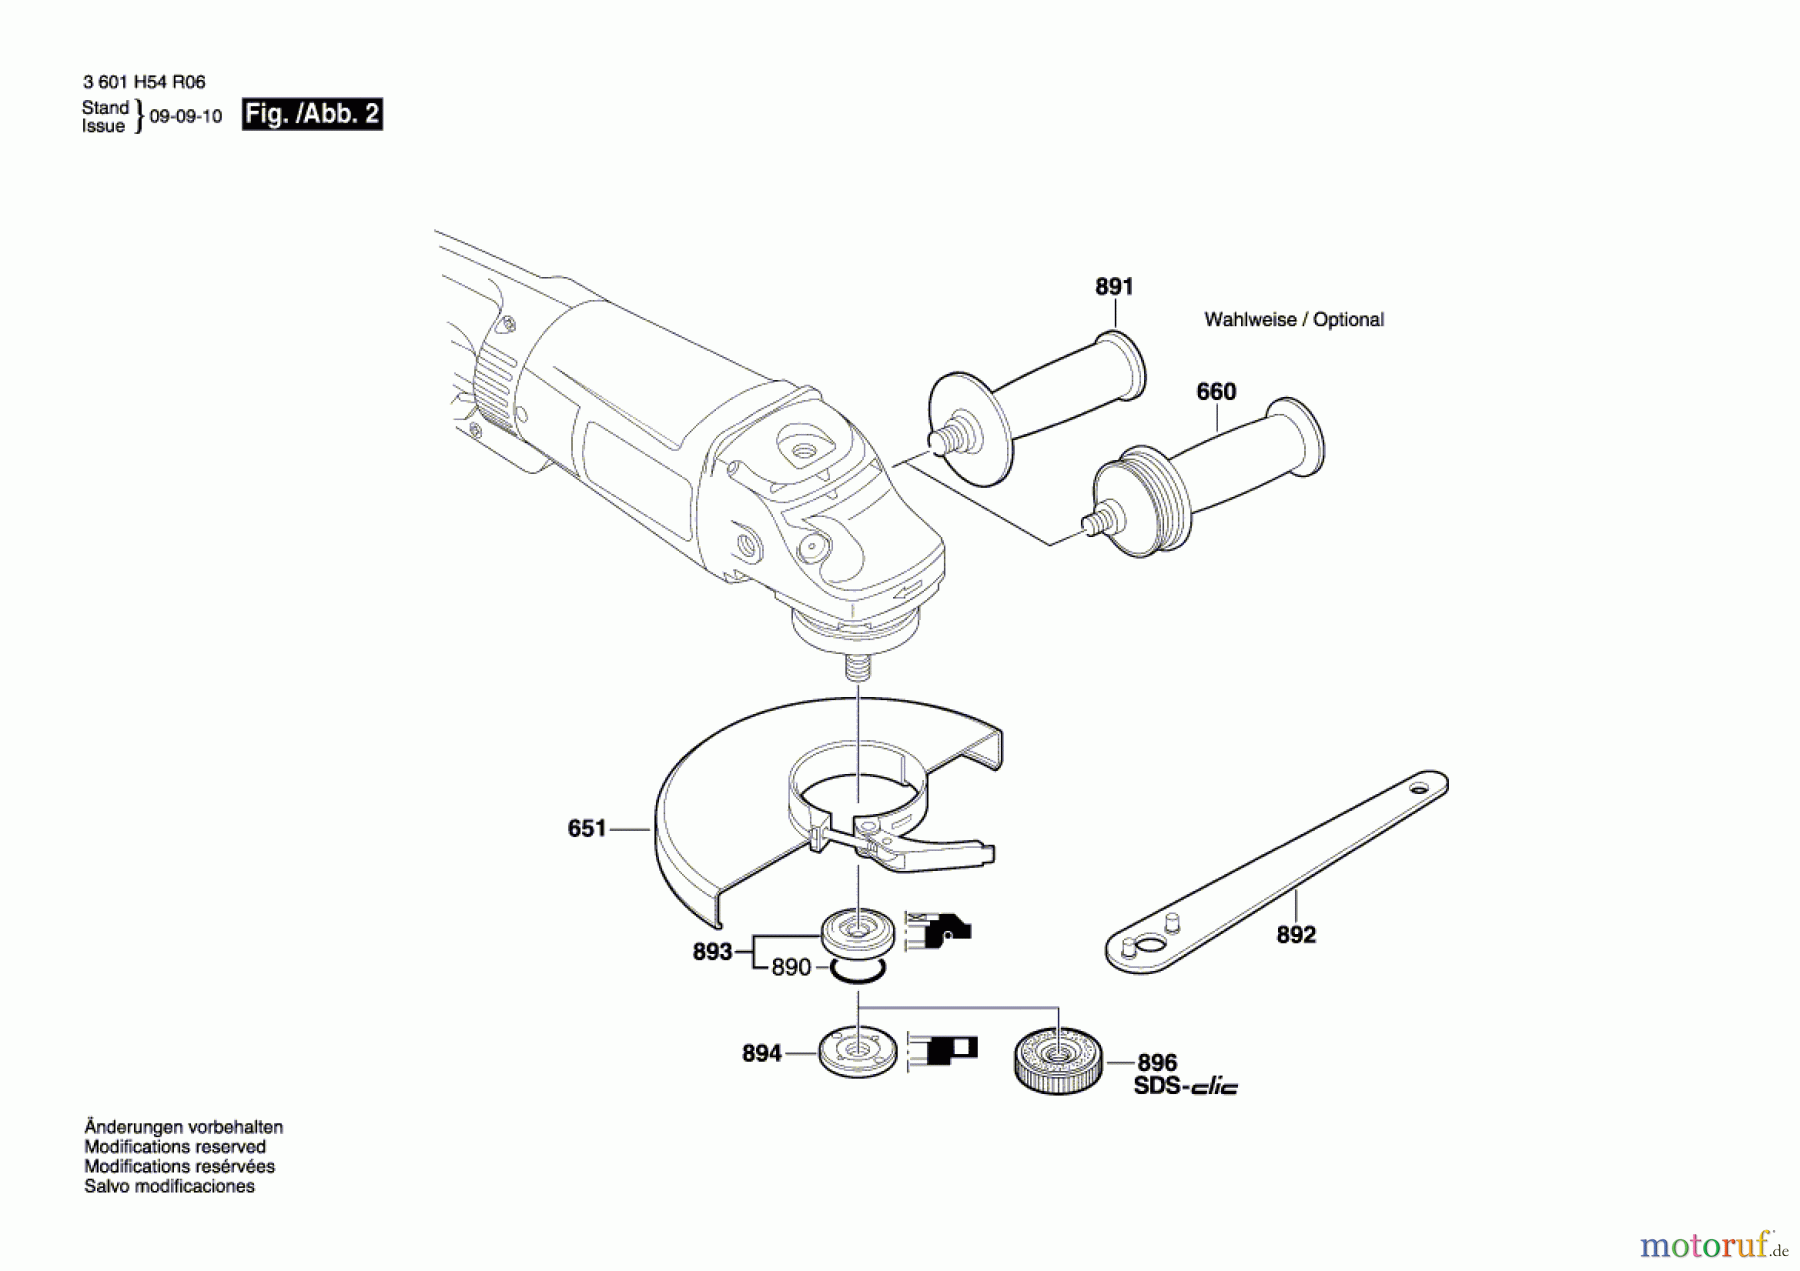  Bosch Werkzeug Winkelschleifer BAG 230-1 CLBF Seite 2